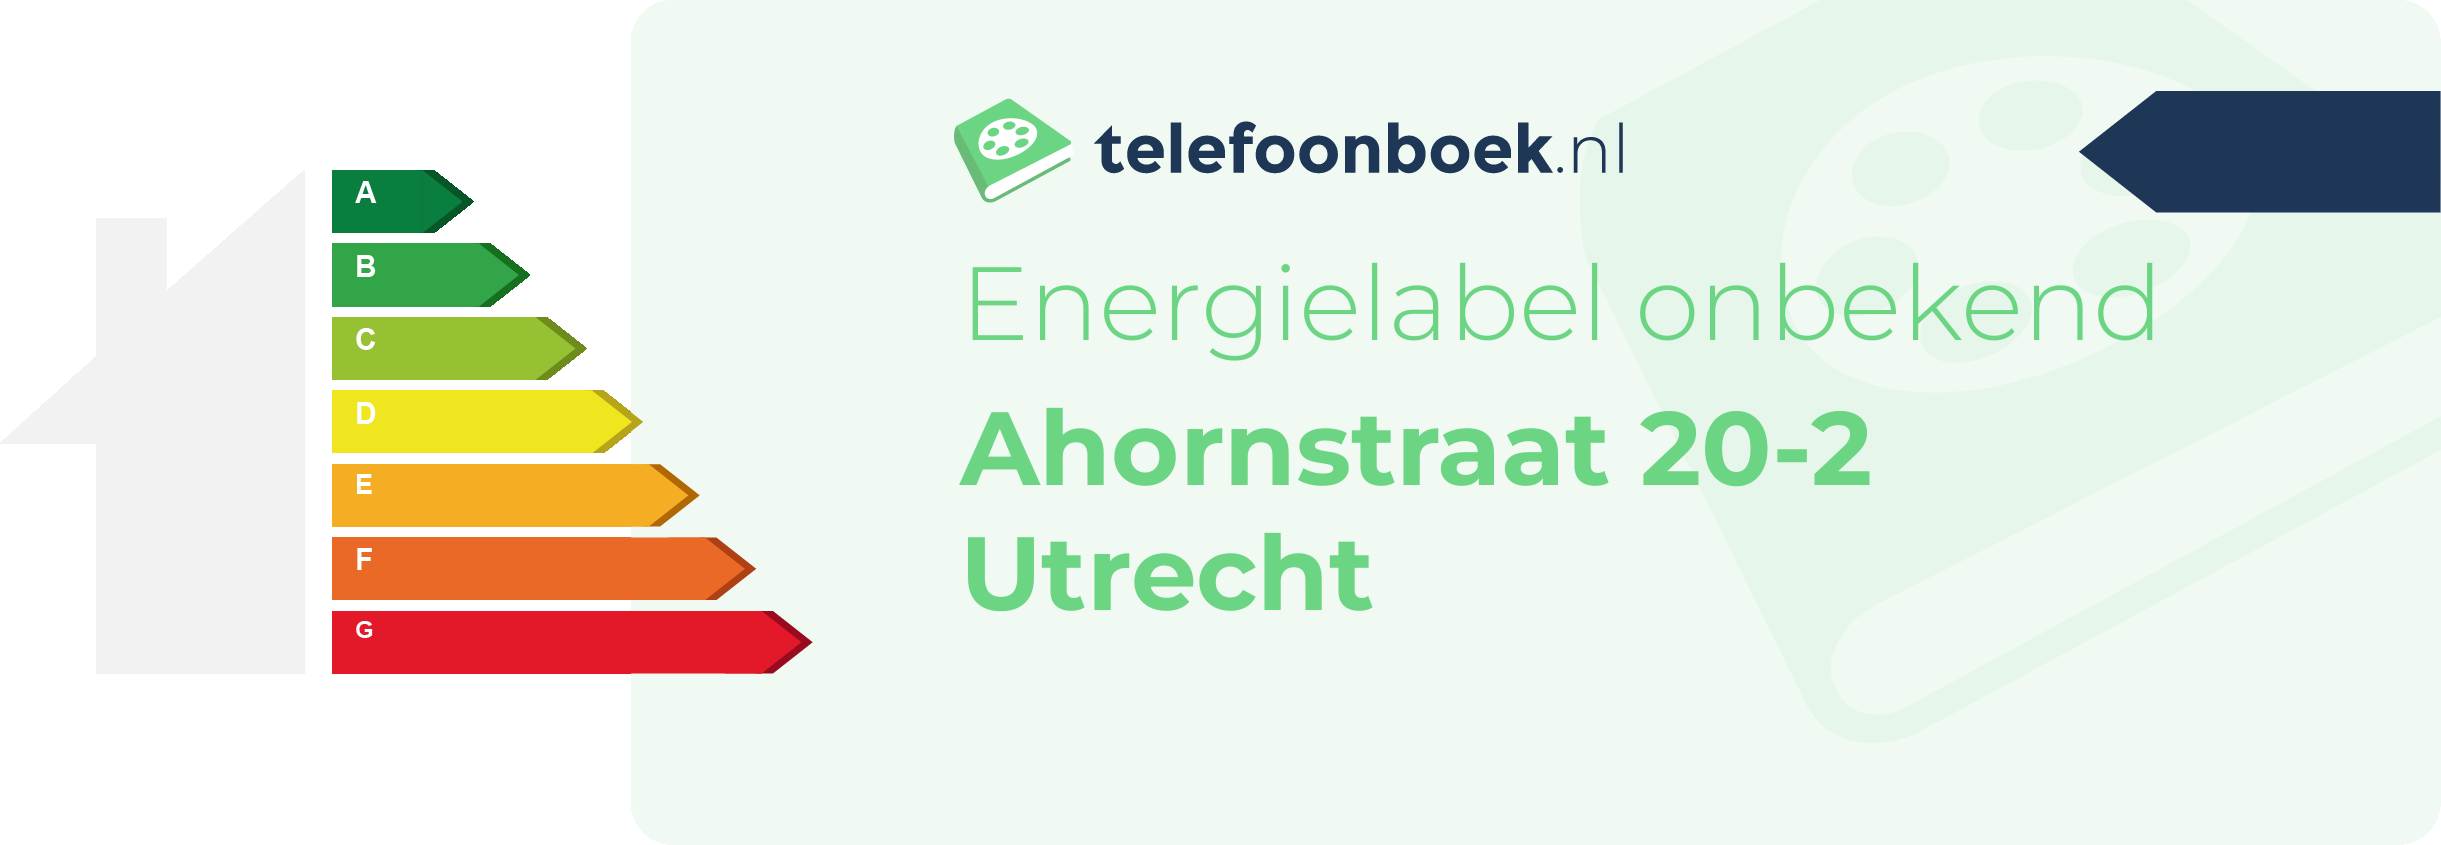 Energielabel Ahornstraat 20-2 Utrecht